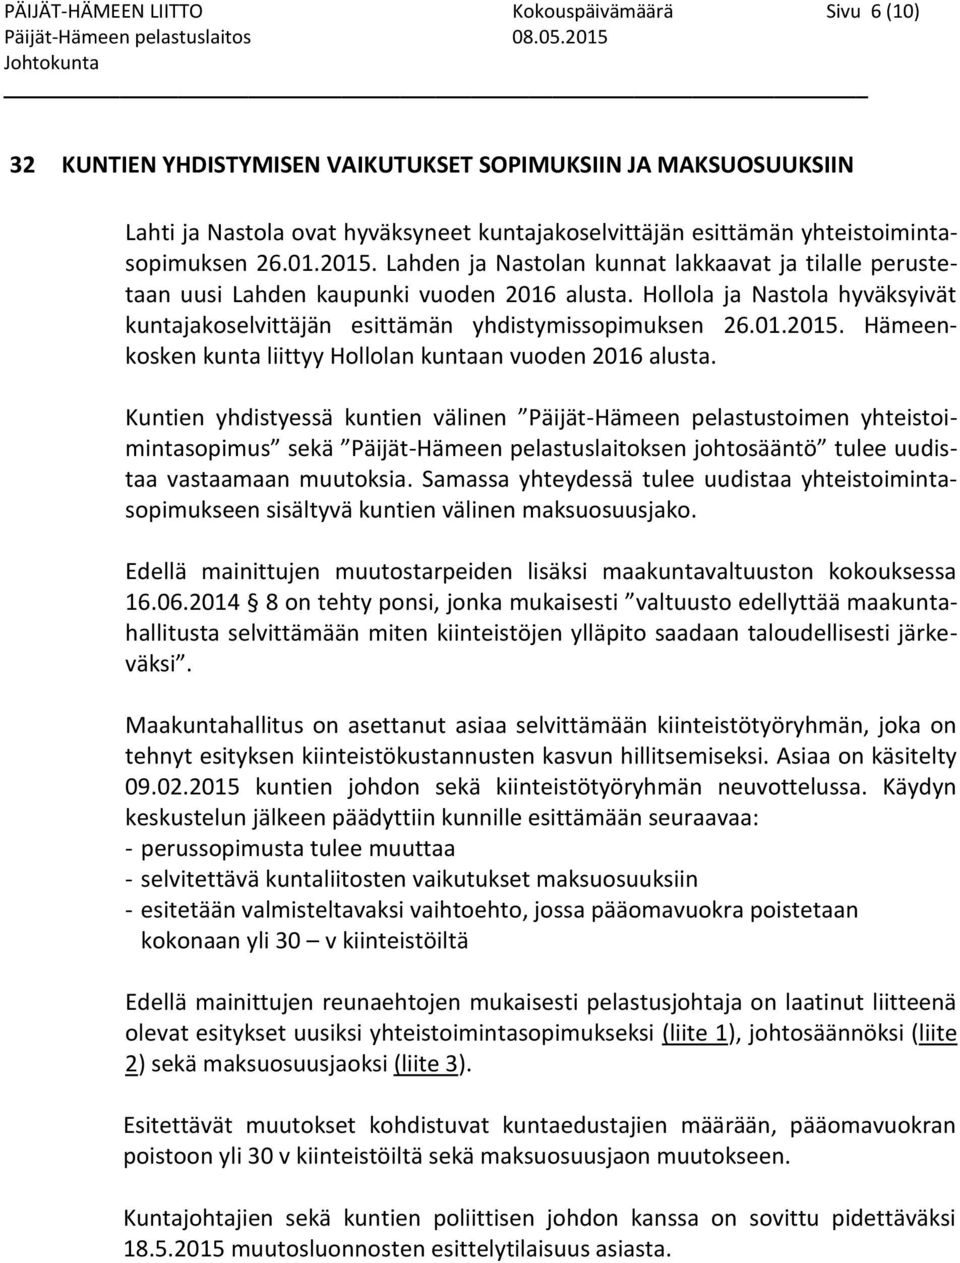 Hollola ja Nastola hyväksyivät kuntajakoselvittäjän esittämän yhdistymissopimuksen 26.01.2015. Hämeenkosken kunta liittyy Hollolan kuntaan vuoden 2016 alusta.